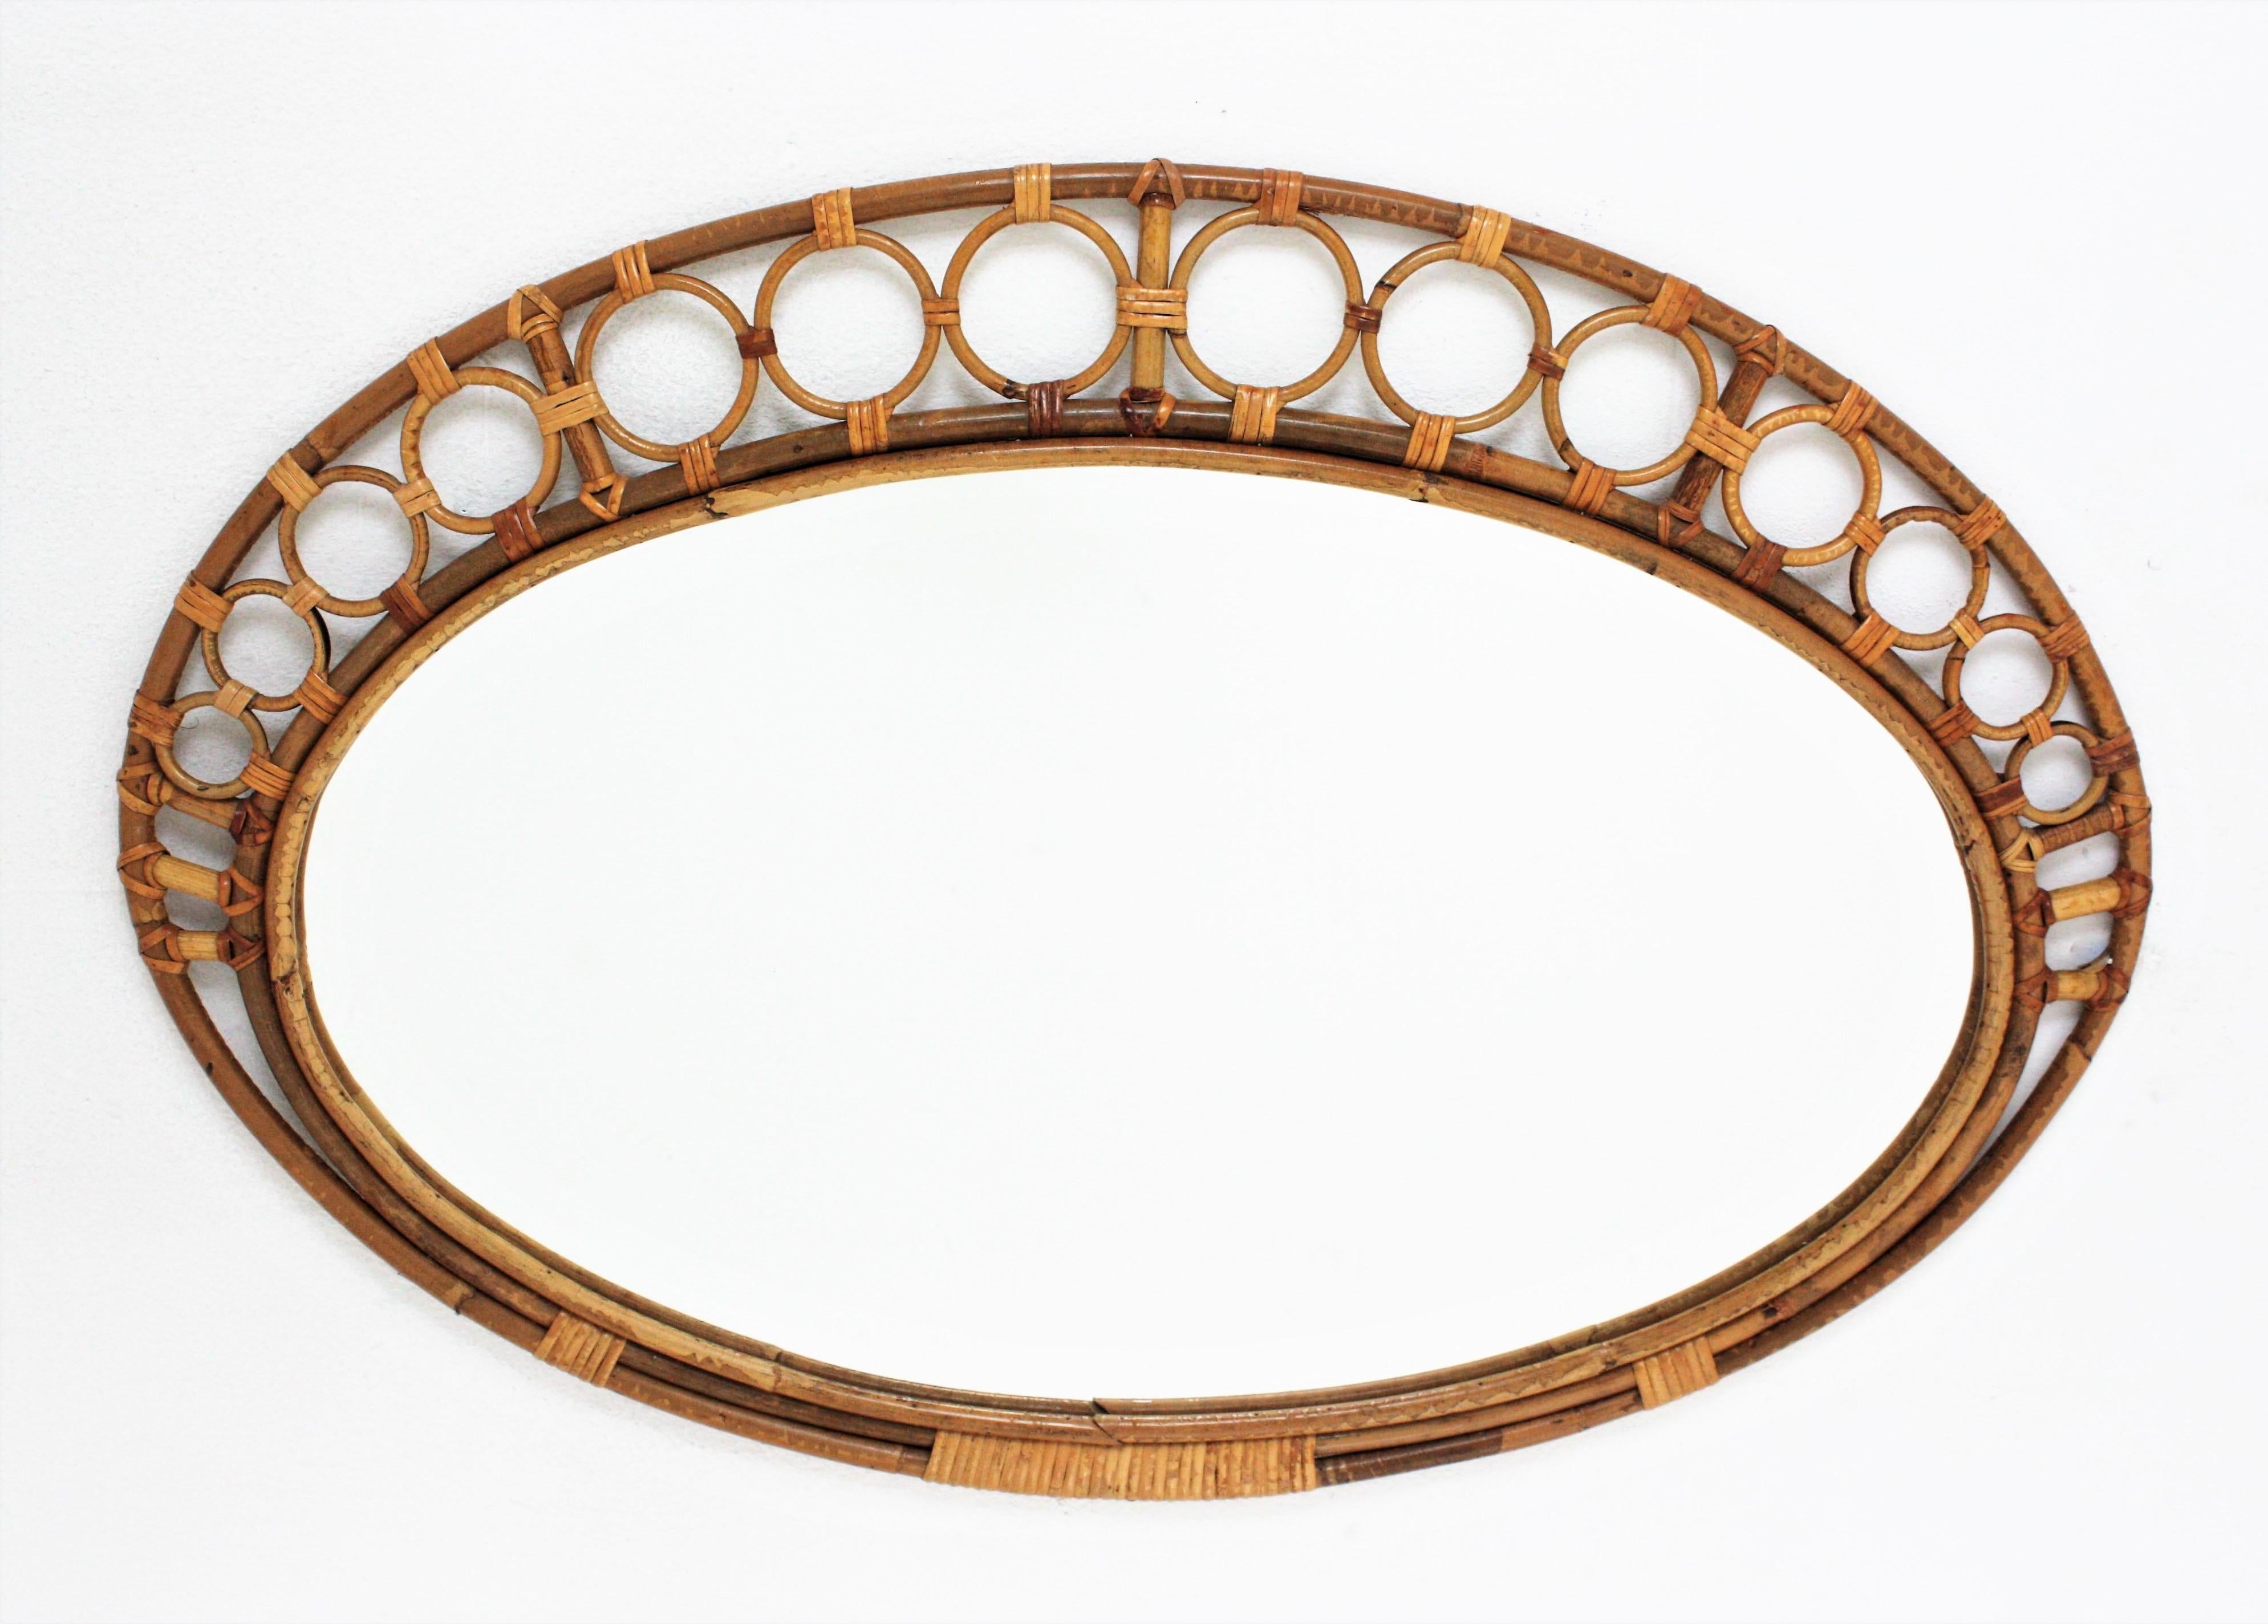 Auffälliger Mid-Century Modern Spiegel, handgefertigt aus Bambus und Rattan mit Ringen, die den Rahmen umgeben.
Dieser mediterrane Wandspiegel besteht aus einem ovalen Bambusrahmen, der von kreisförmigen Rattanverzierungen umgeben ist, die von der